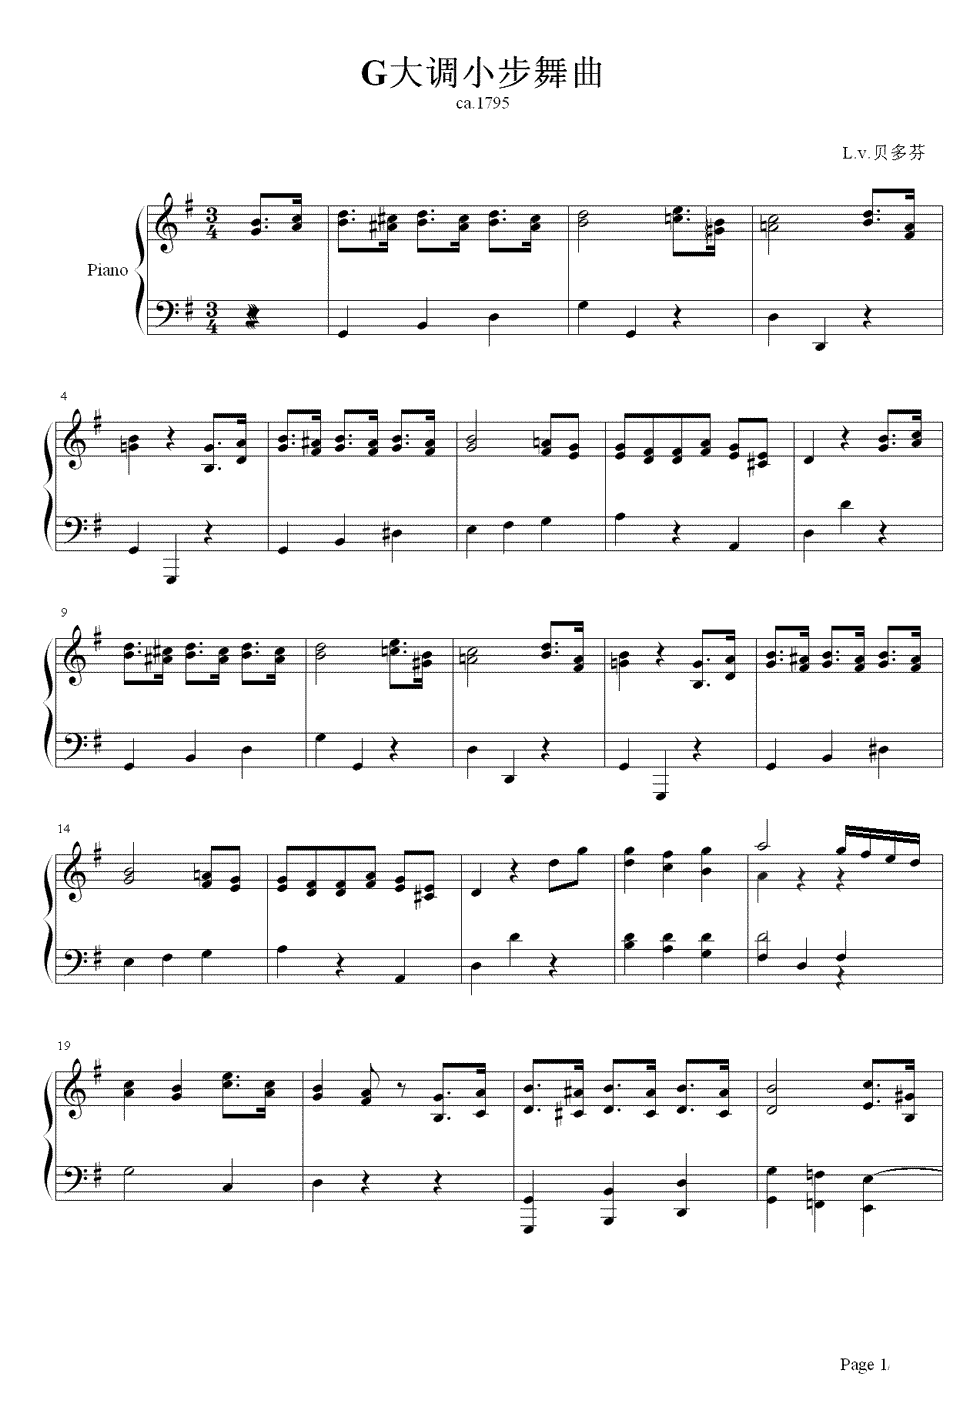 小步舞曲钢琴谱 贝多芬众多小步舞曲中最著名的作品1